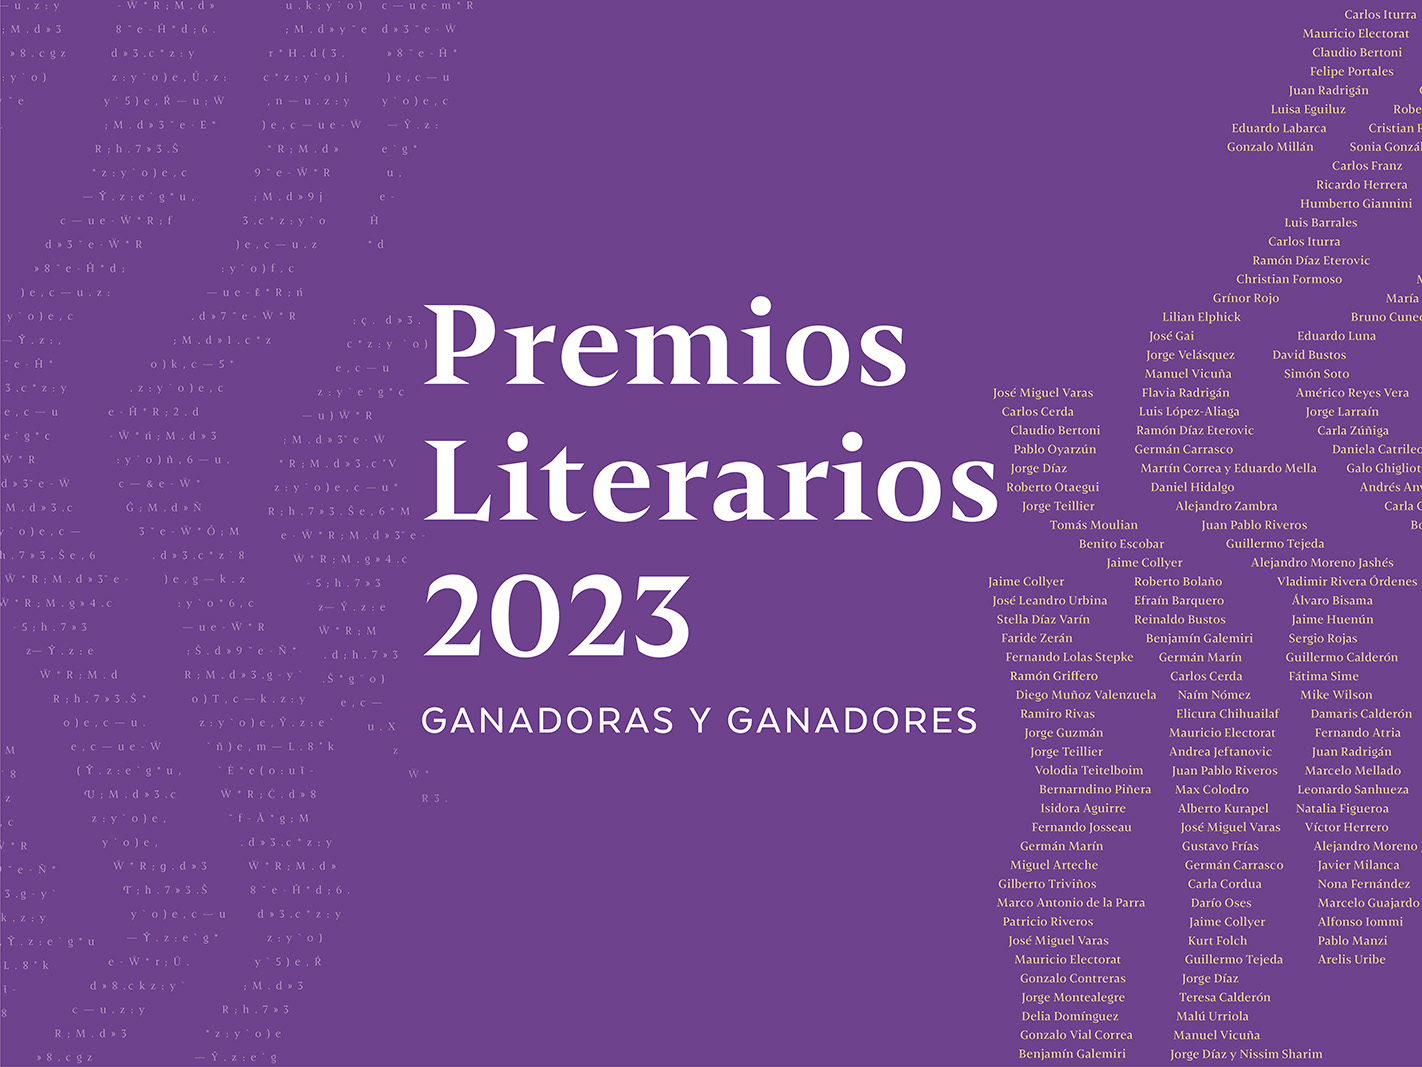 Miembros de la comunidad de la Facultad de Comunicación y Letras UDP reciben reconocimientos en los Premios Literarios 2023